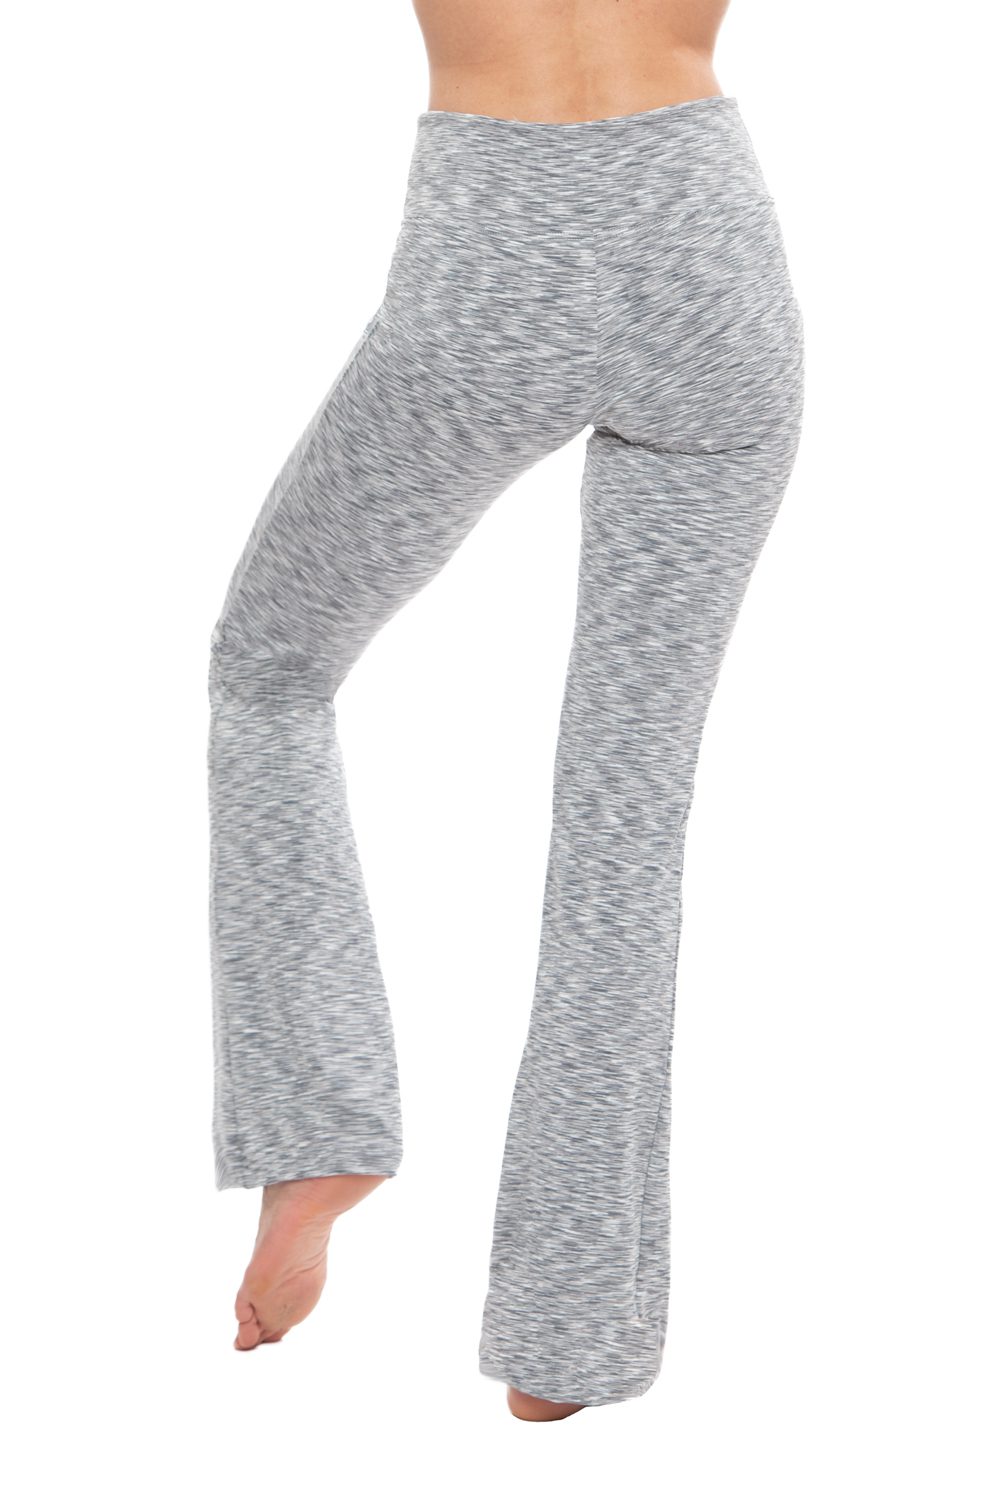 Bootcut Yoga Pants for Women – SD Grey – Nirlon